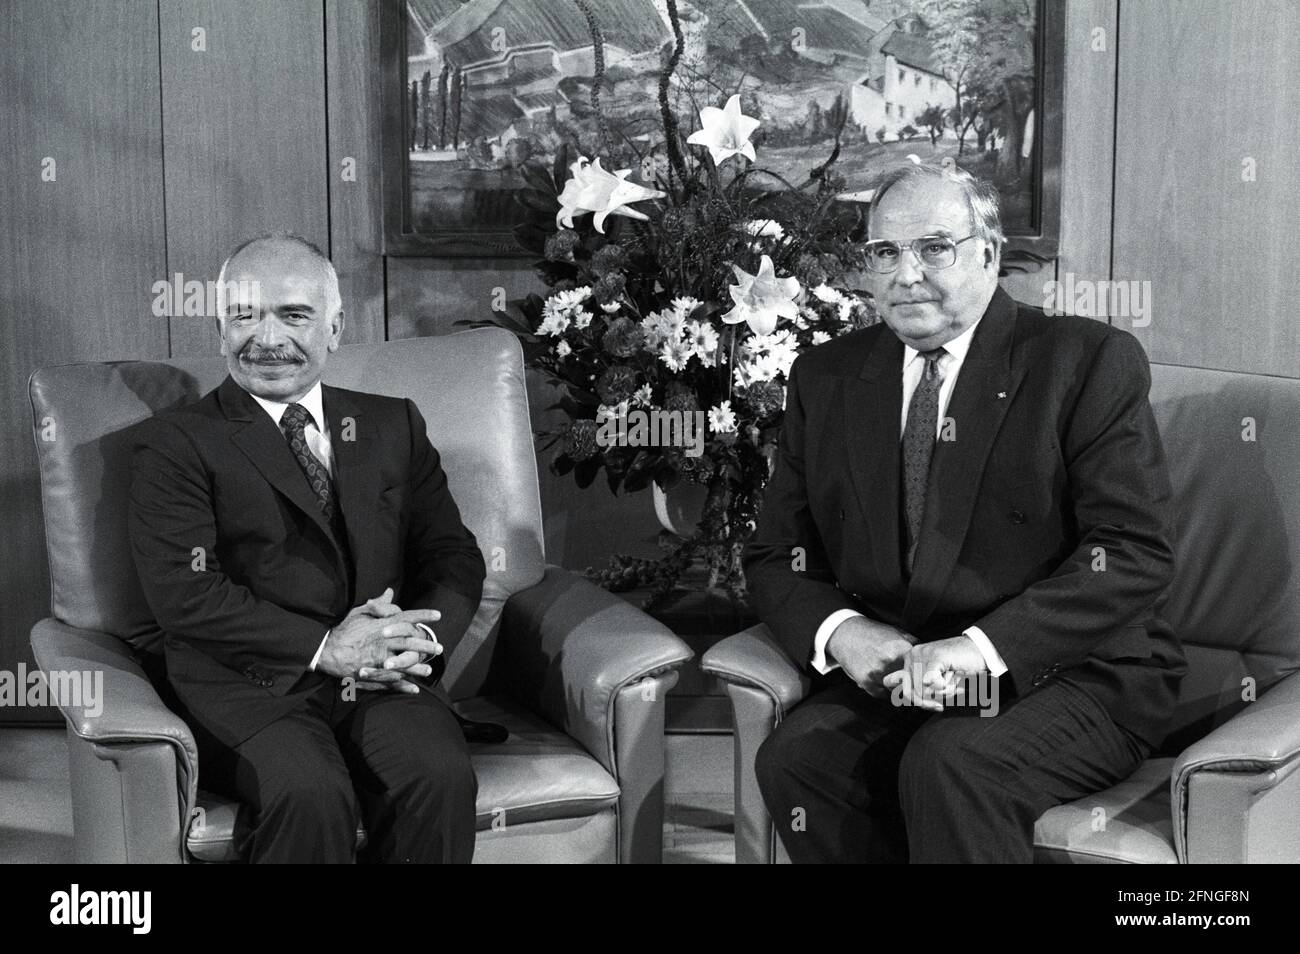 Allemagne, Bonn, 03.09.1990 Archive-No.: 20-17-04 le roi Hussein de Jordanie à Bonn photo: Le chancelier fédéral Helmut Kohl et le roi Hussein Bin Talal [traduction automatique] Banque D'Images